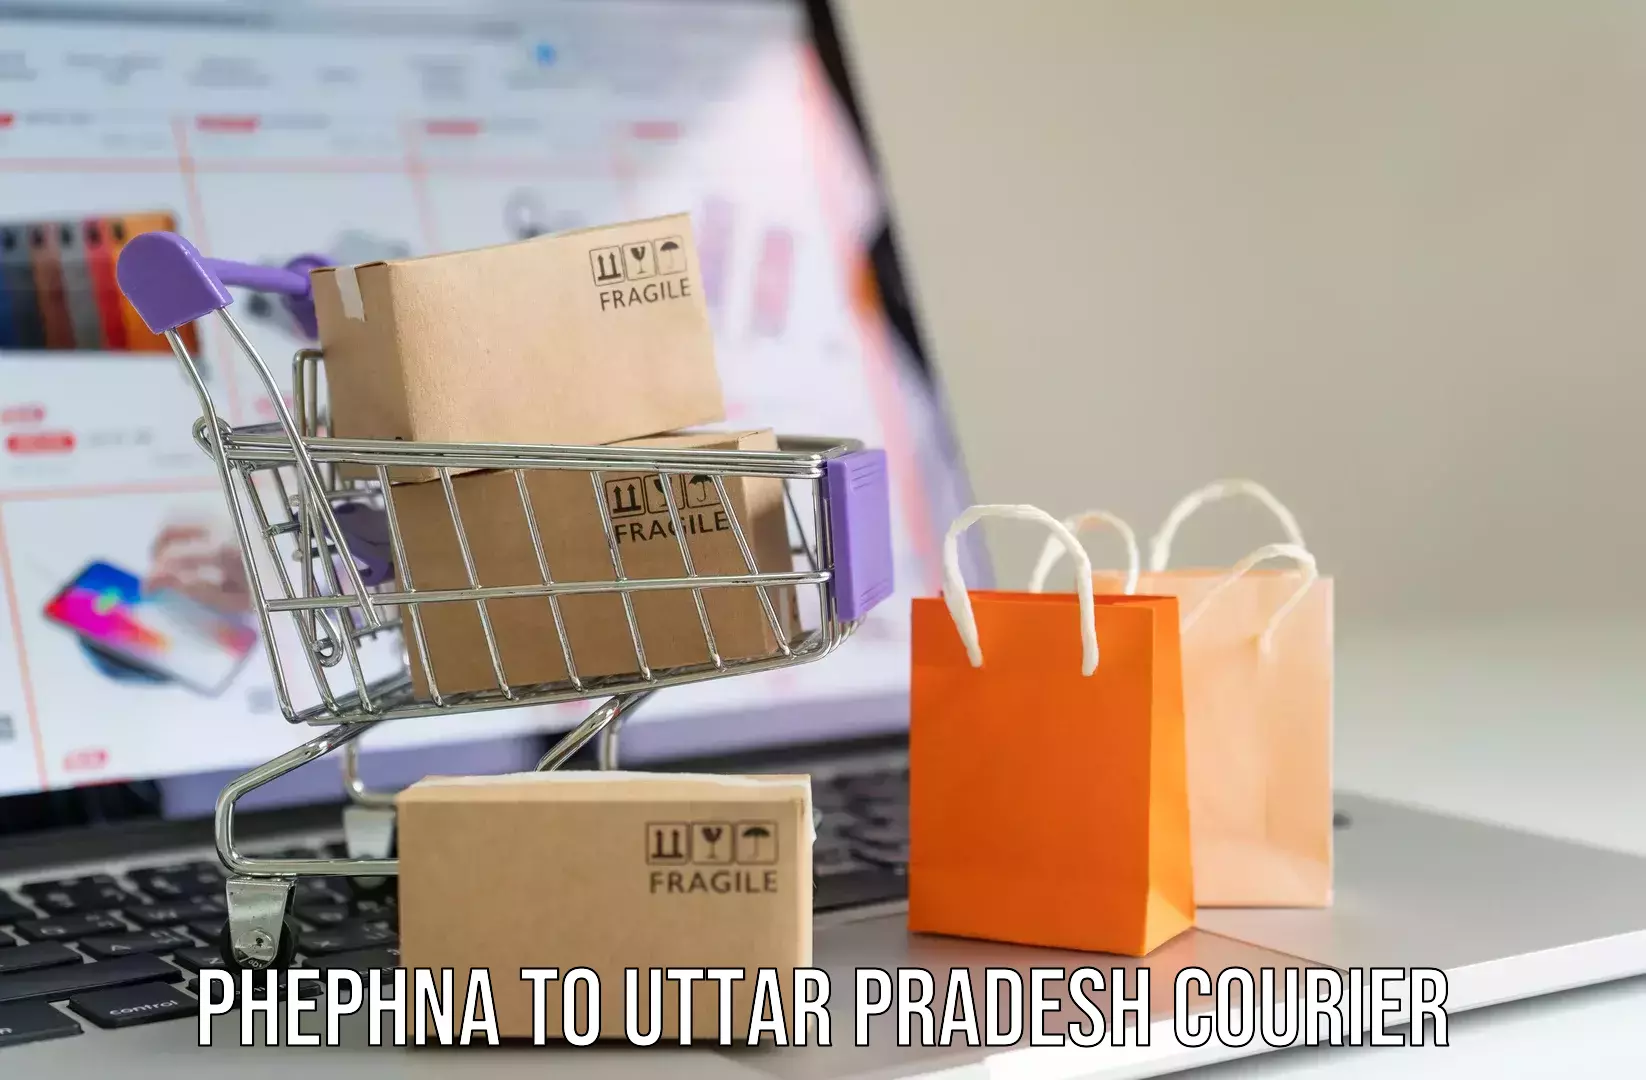 Luggage transfer service Phephna to Uttar Pradesh